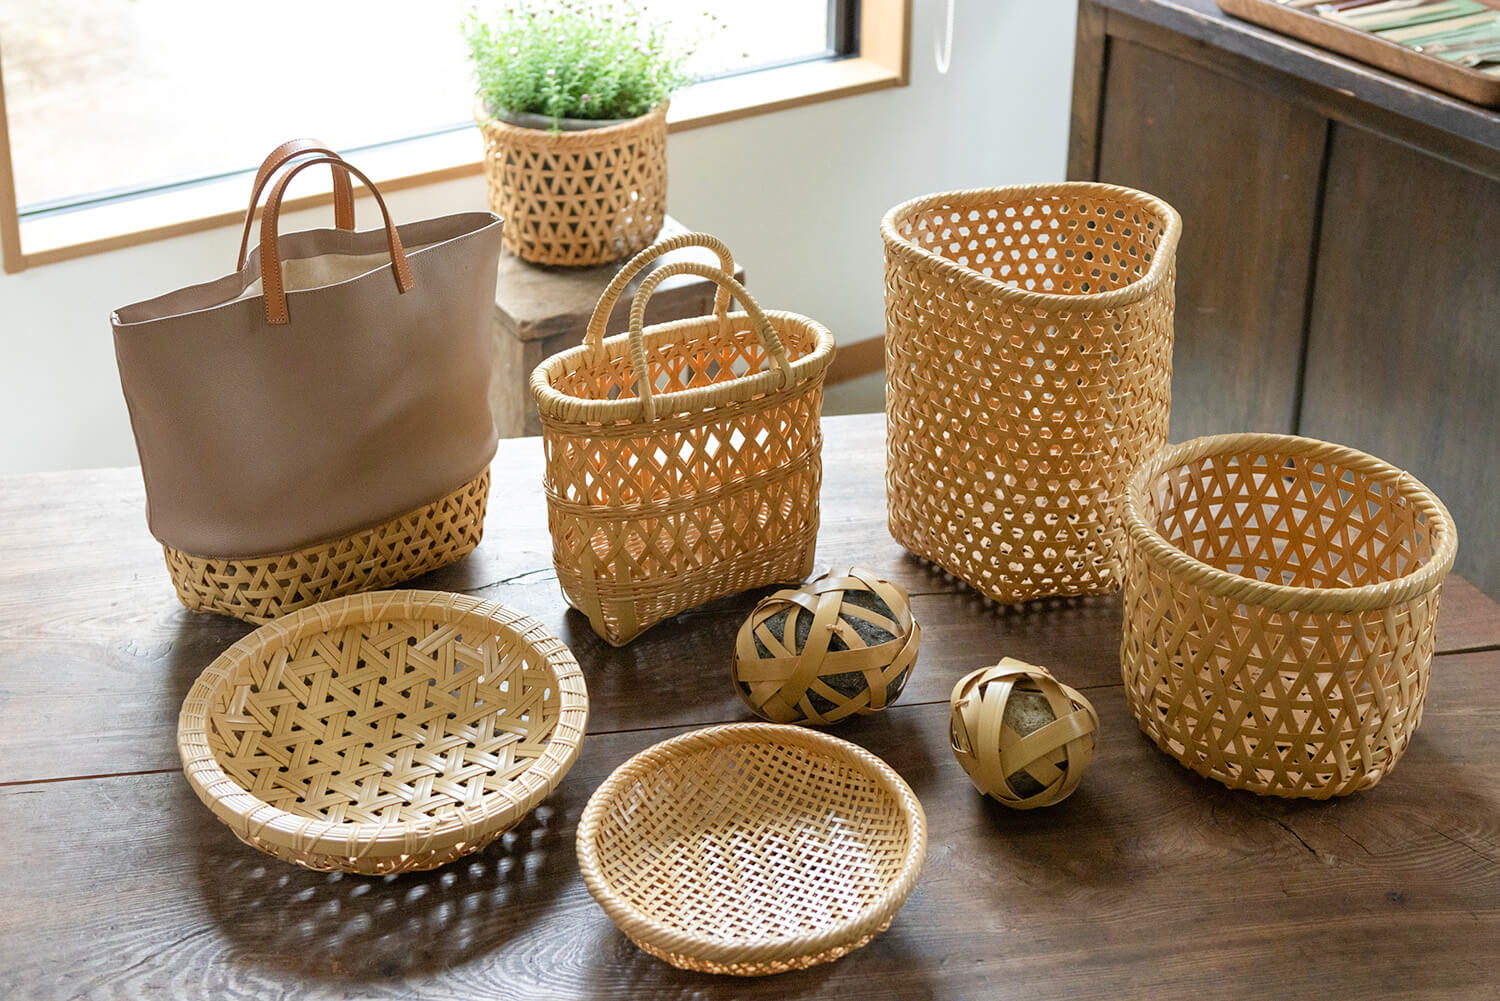 手に取るとよく分かる網目の美しさ。竹細工とレザーを組み合わせた籠やバッグもあり、竹細工の新たな魅力を提案している